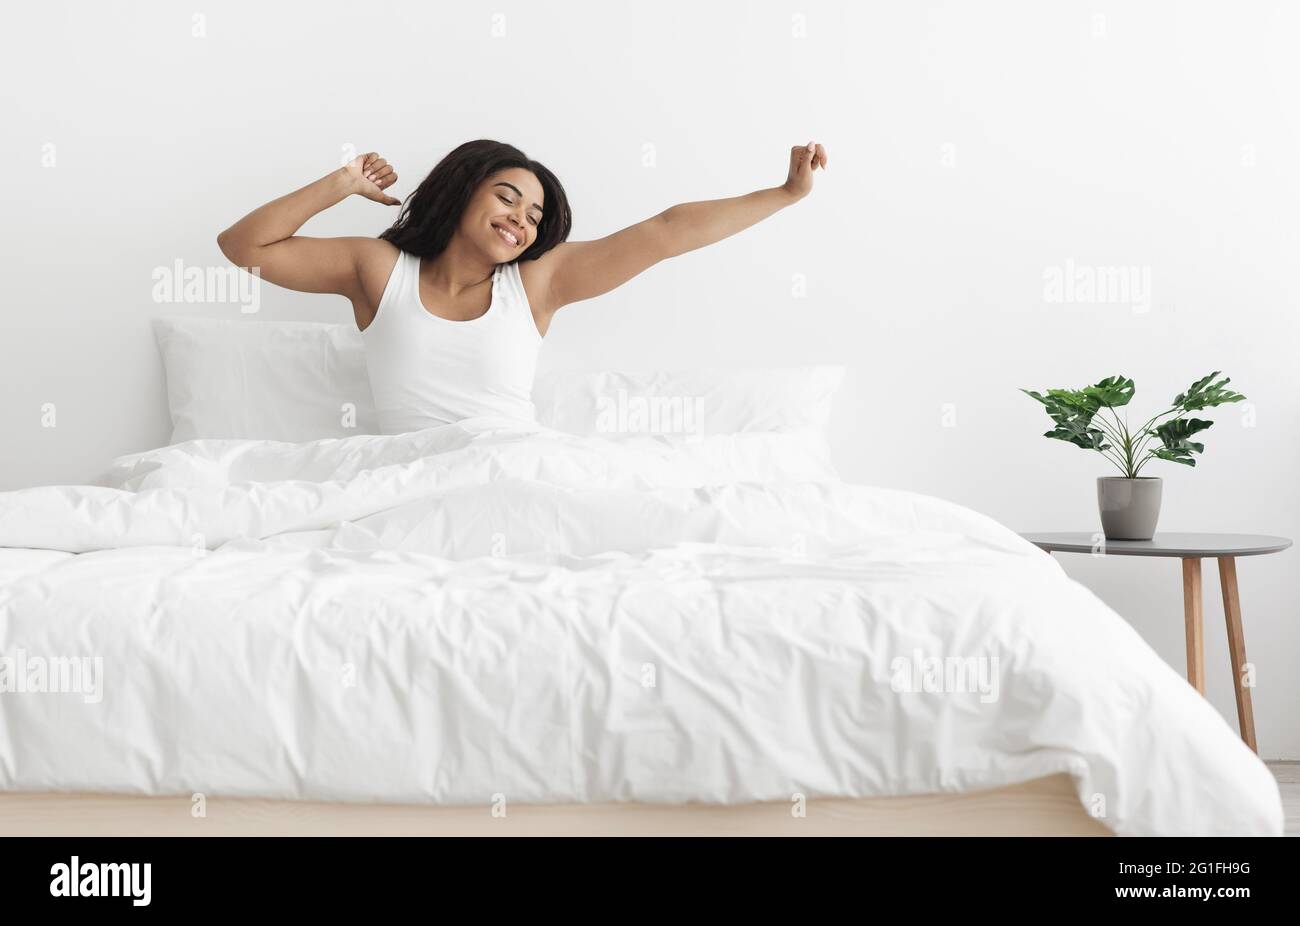 Guten Morgen, neuer Tag. Aufgeregte afroamerikanische Dame, die auf dem Bett sitzt, nach dem Schlaf die Arme streckt und Platz frei macht Stockfoto